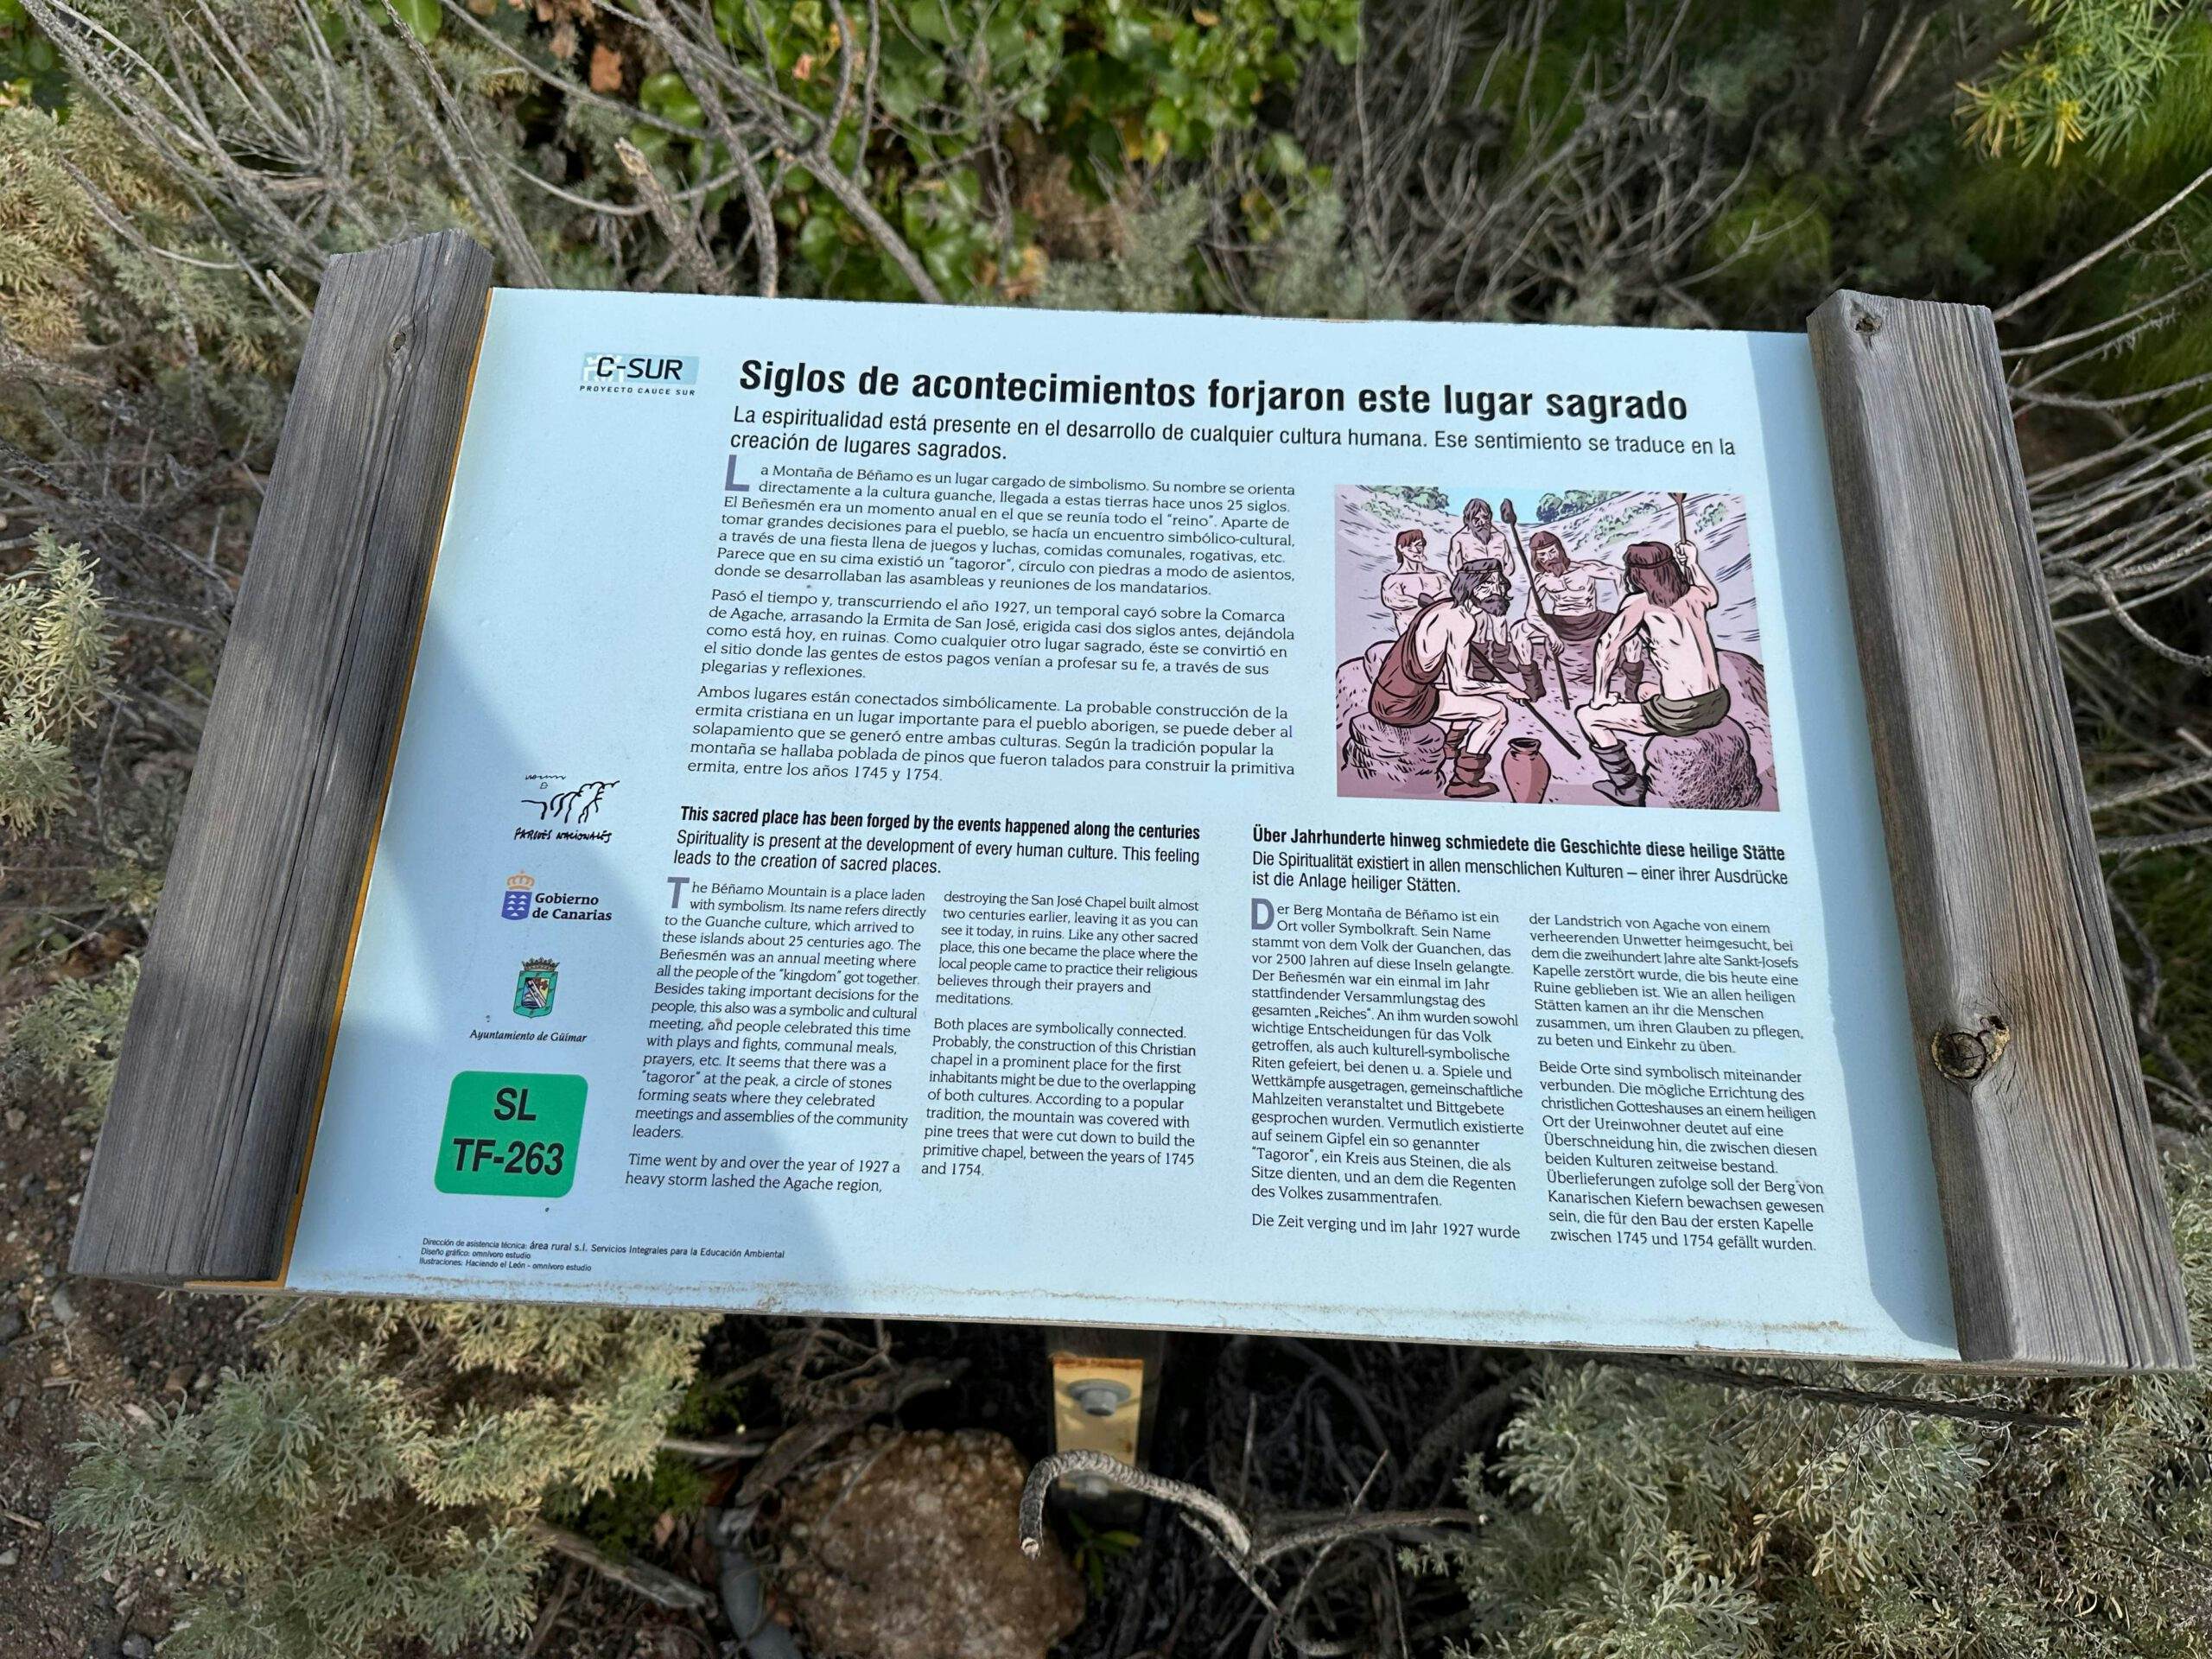 Interesting information along the way - Camino Real del Sur Granadilla de Abona to Güimar